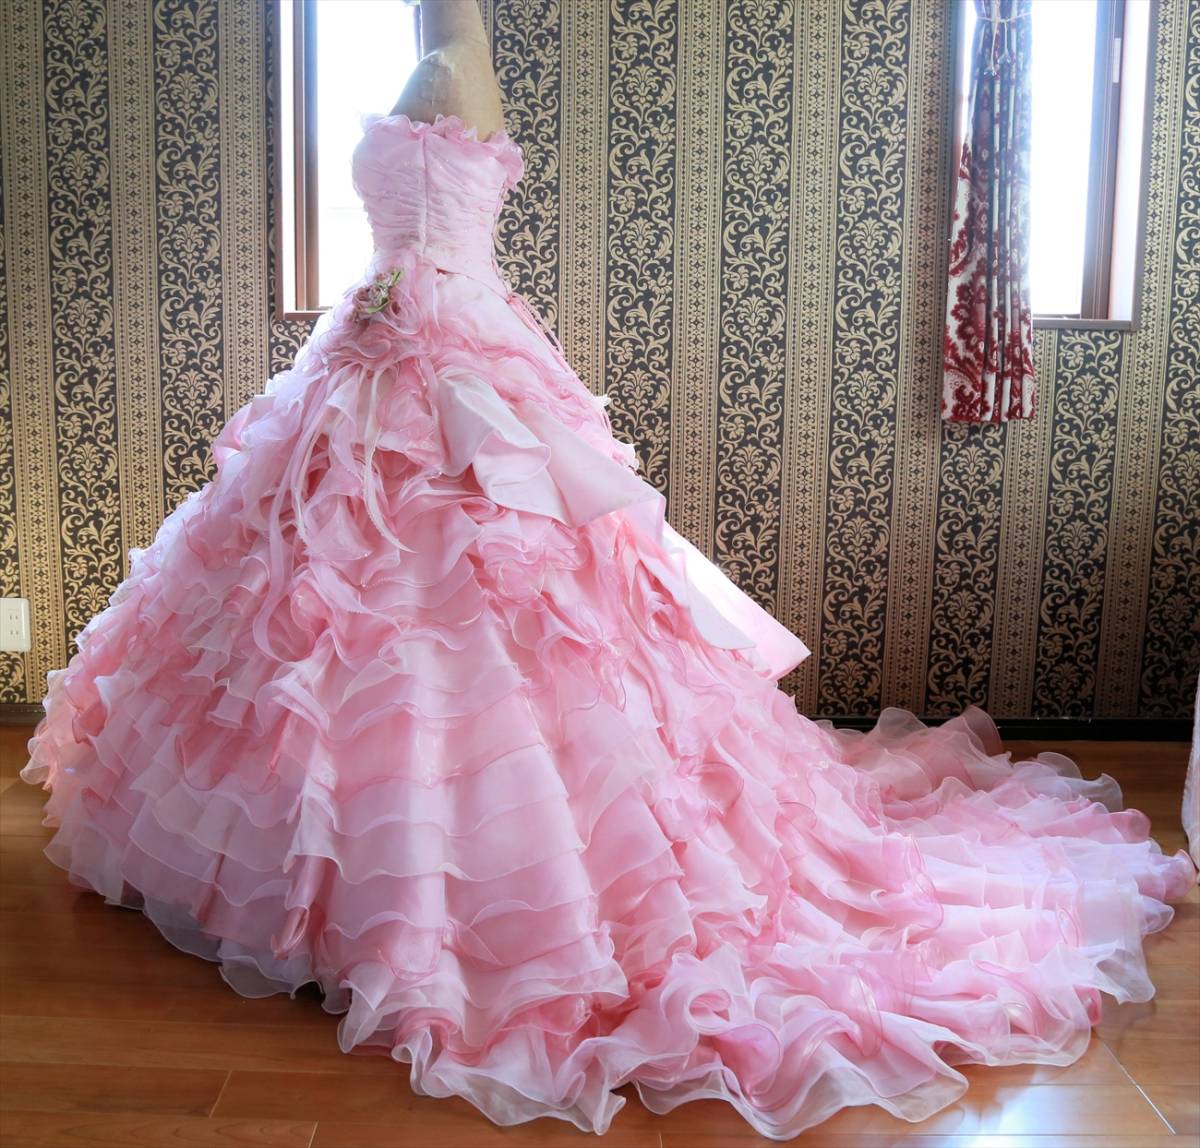 香里奈プロデュースのウエディングドレス「サンクタ・カリナ」の画像まとめ